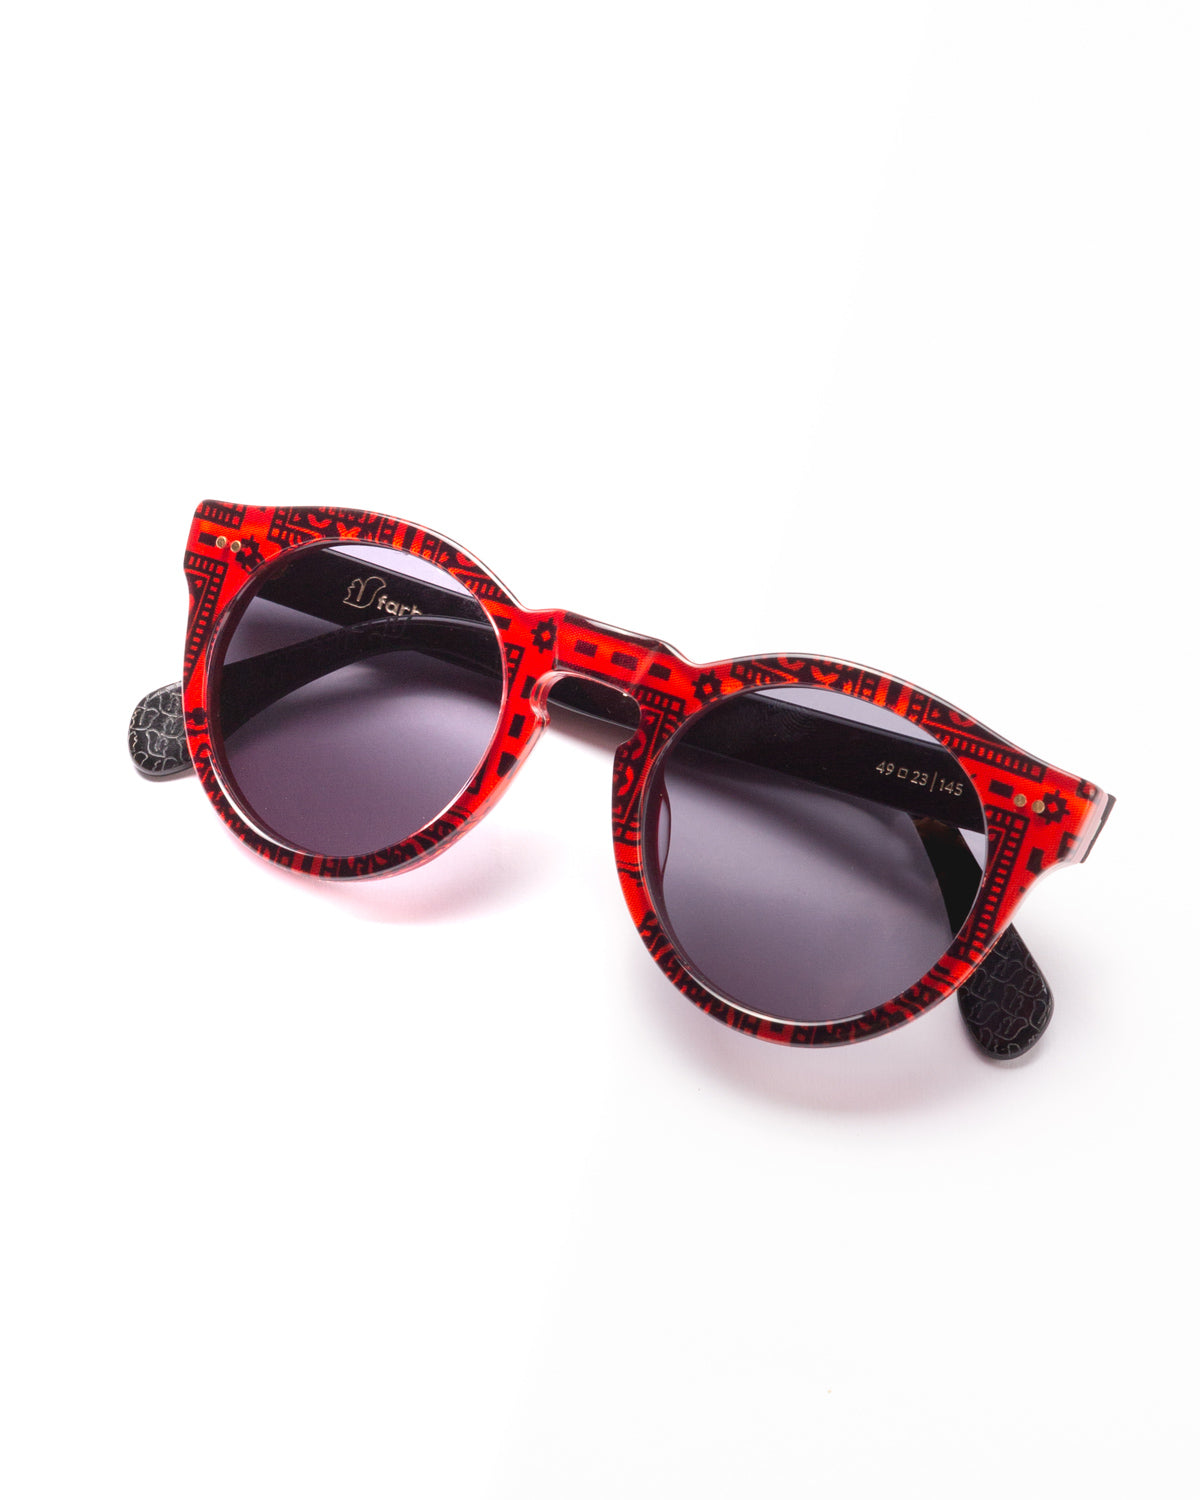 Farben F9 - 001 sunglasses